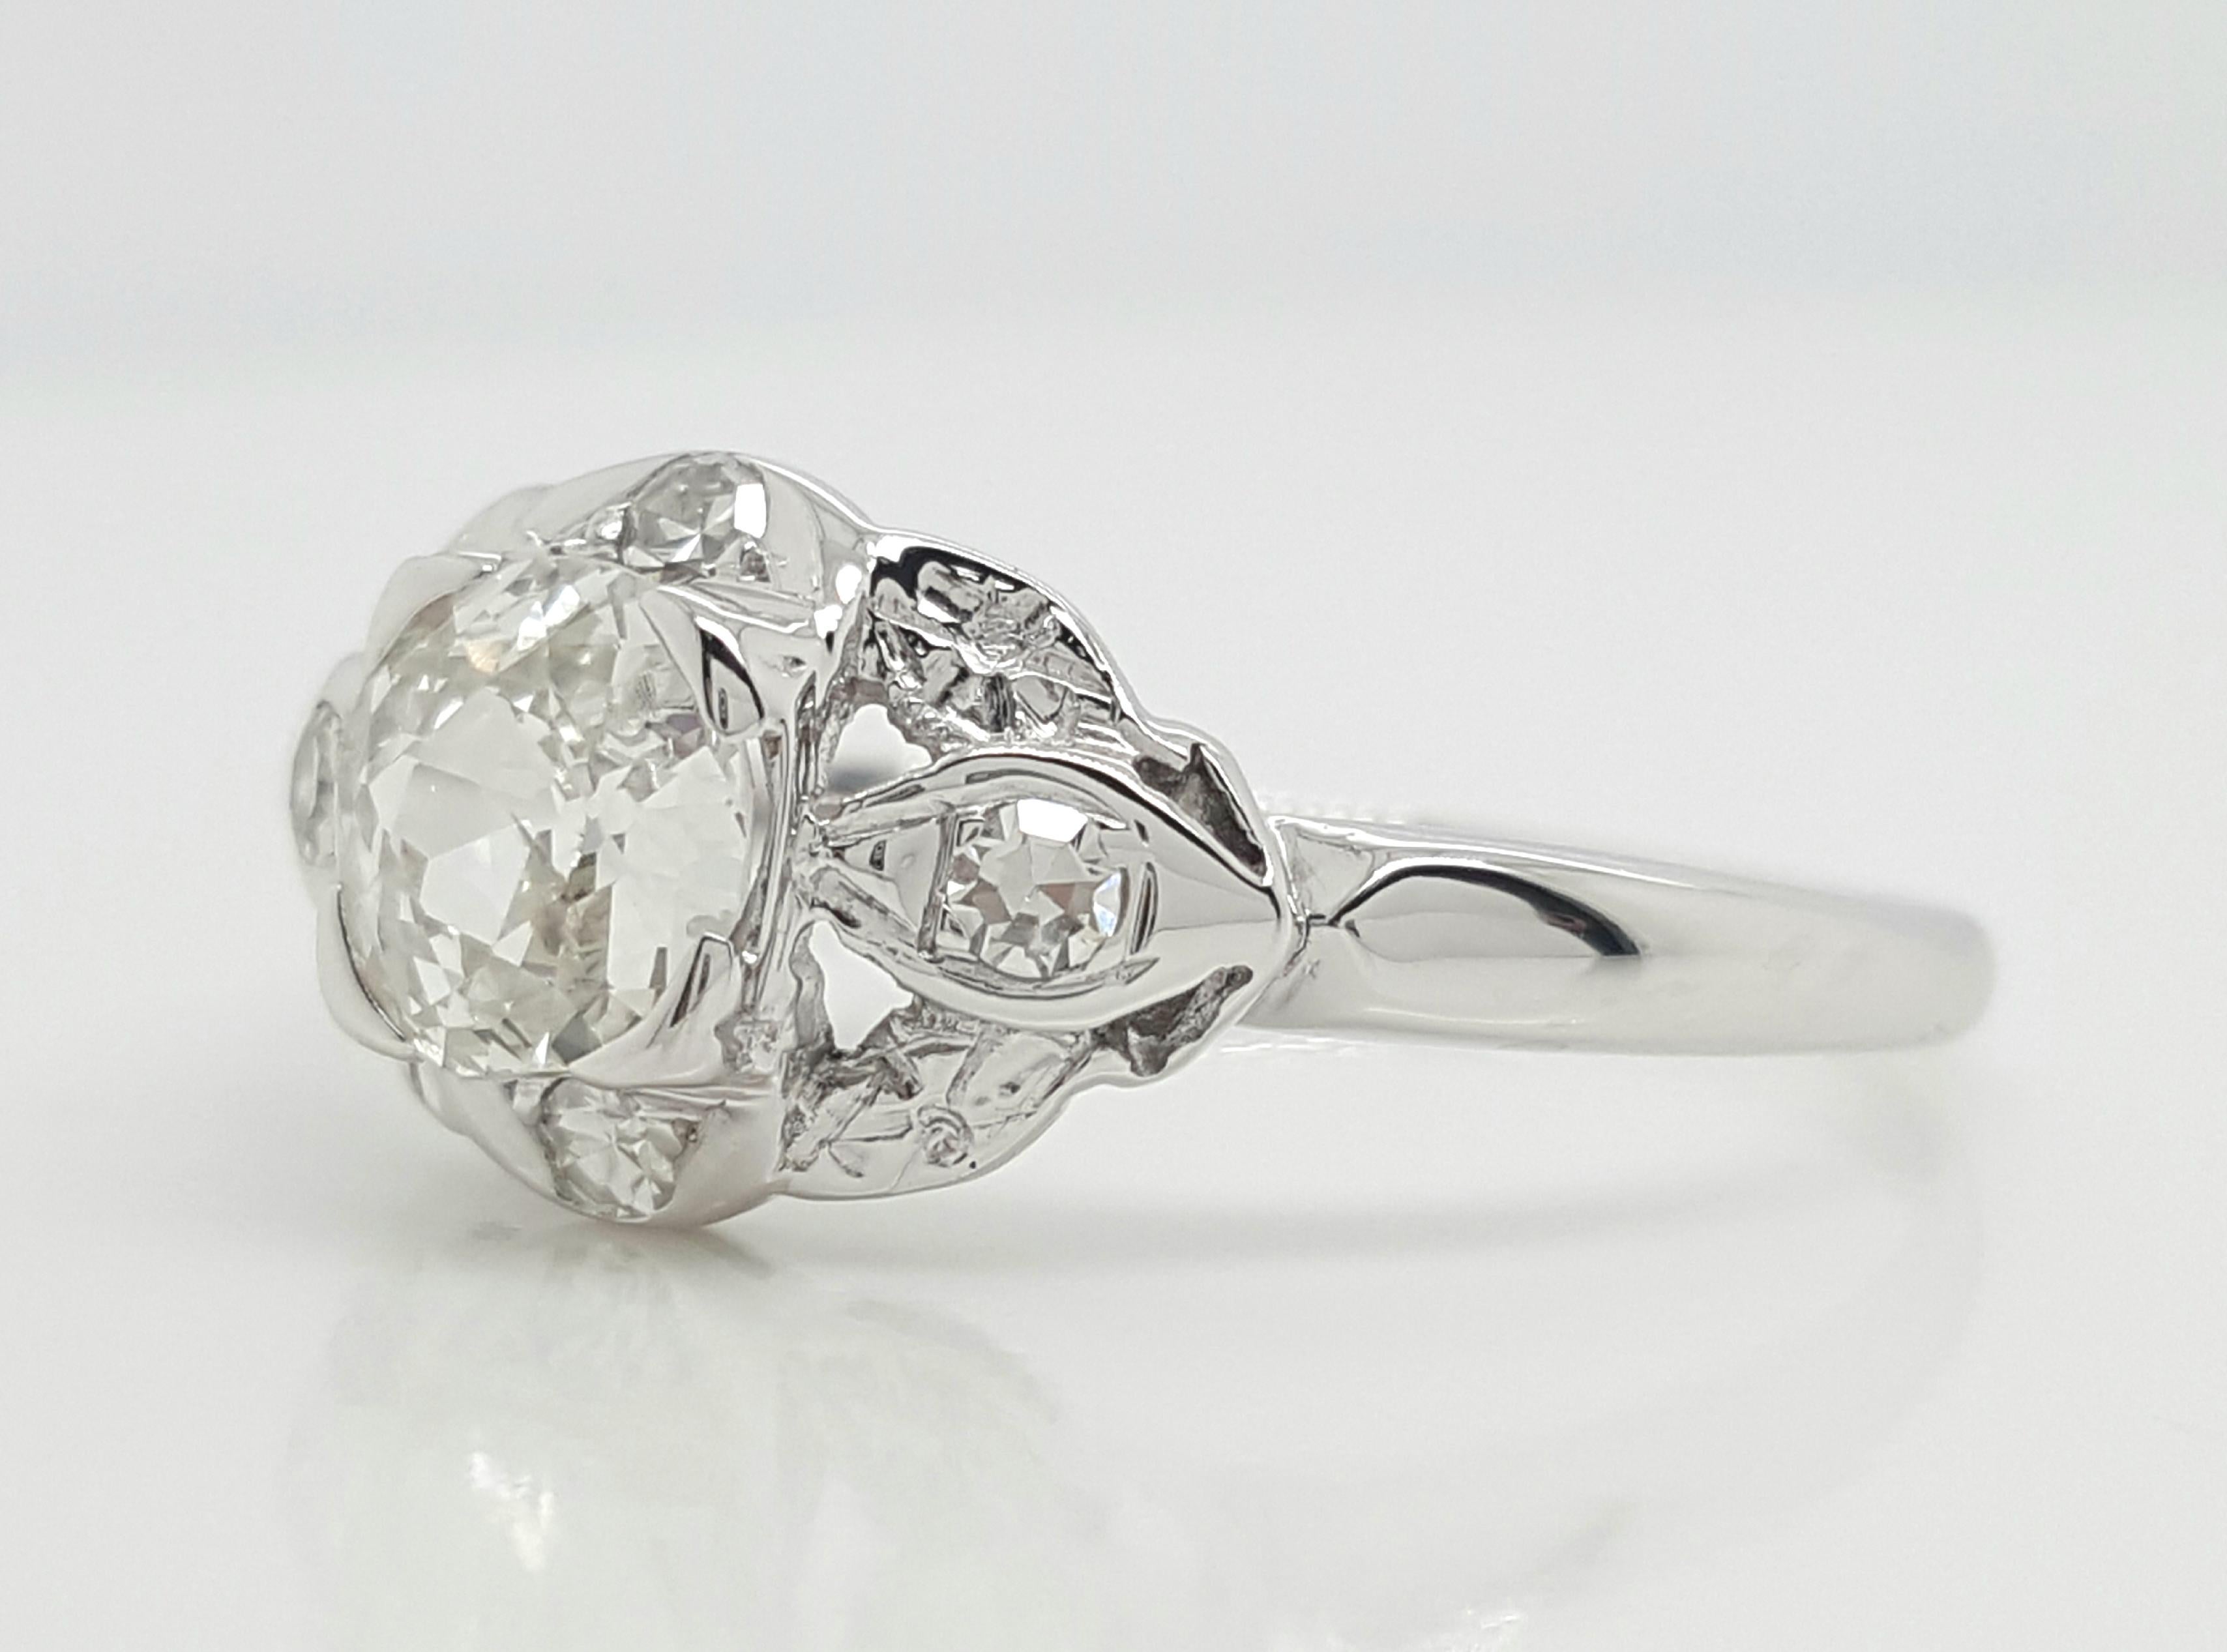 Cette bague de fiançailles classique en diamant présente un diamant de taille européenne ancienne de 0,65 carat, accentué par 4 diamants plus petits de taille unique qui flanquent le centre et scintillent d'une épaule à l'autre ! Cette bague de